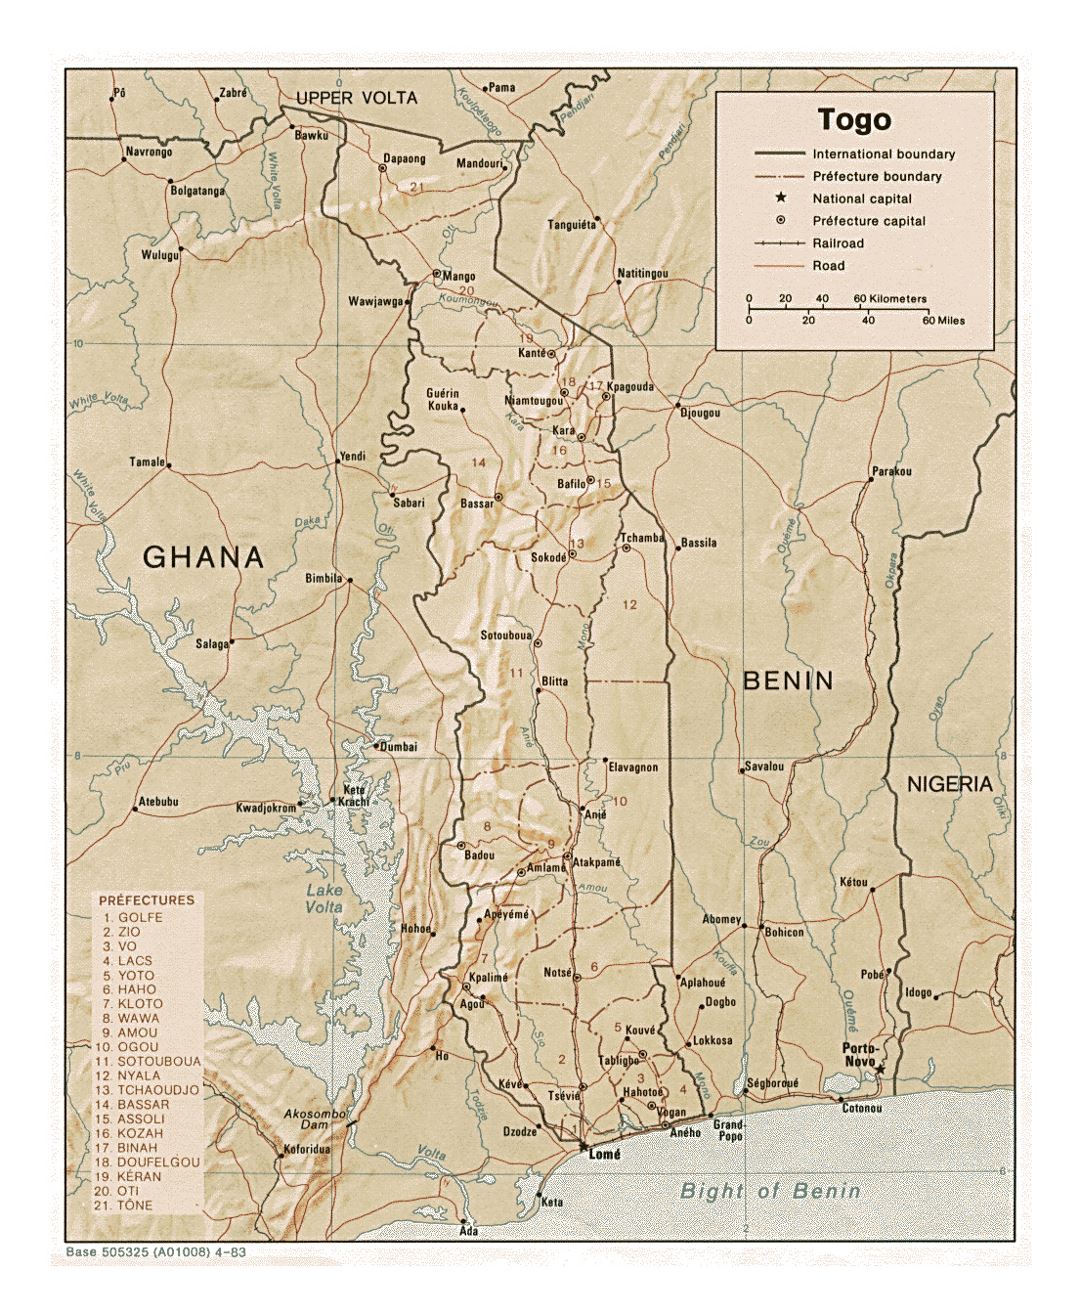 Детальная политическая и административная карта Того с рельефом, дорогами, железными дорогами и крупными городами - 1983